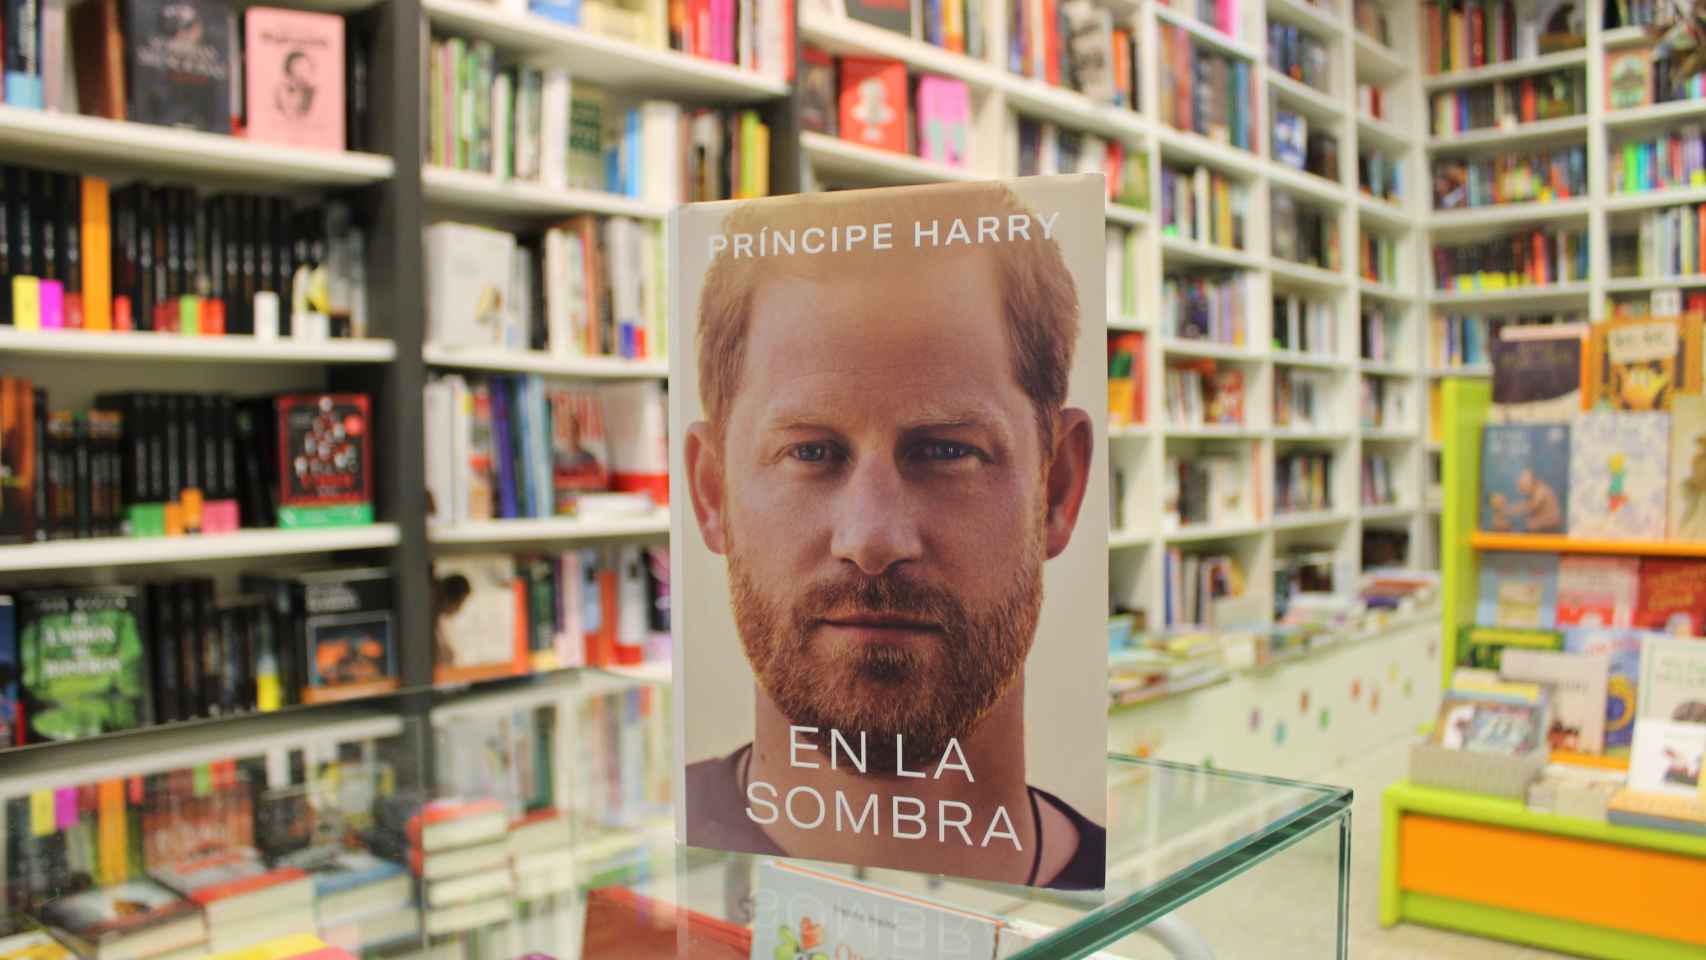 El libro 'En la sombra' comprado en primicia por este diario en la Librería Jarcha, en Madrid.